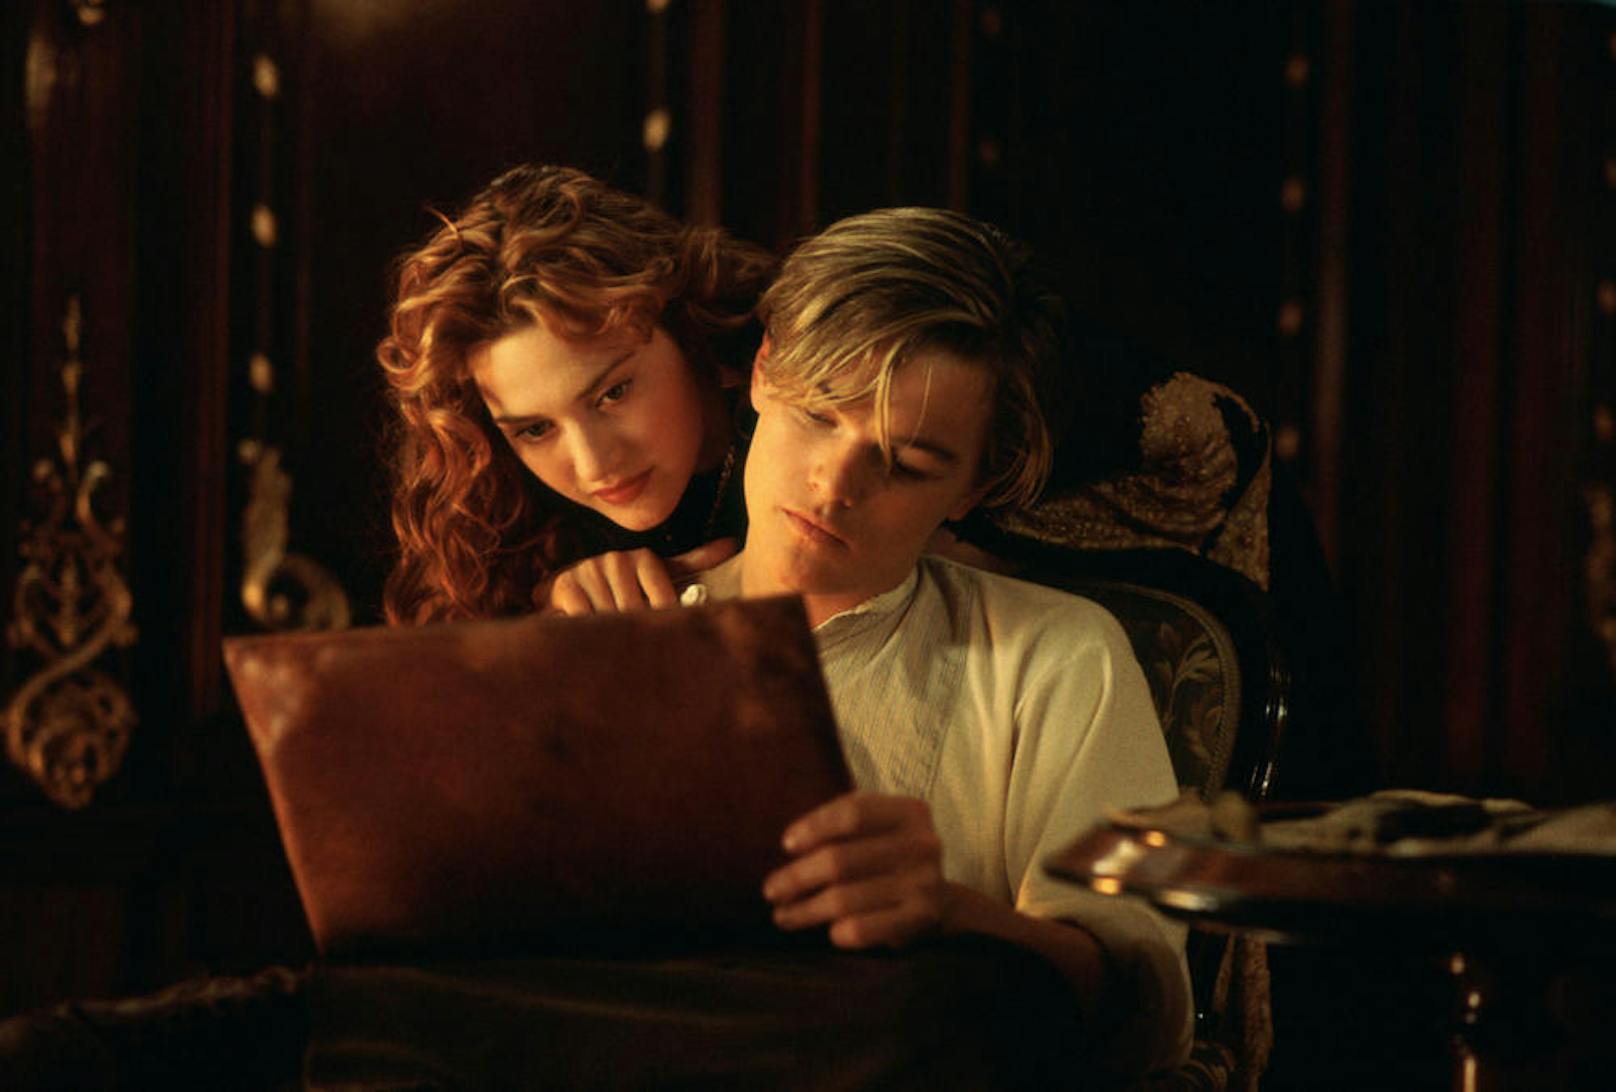 Die herzzerreißende Liebesgeschichte zwischen Rose (<strong>Kate Winslet</strong>) und Jack (Leonardo DiCaprio) begeistert noch immer ein Millionenpublikum. Winslet ist ihre Darbietung in <em>"Titanic"</em> trotz Oscarnominierung ein Graus.